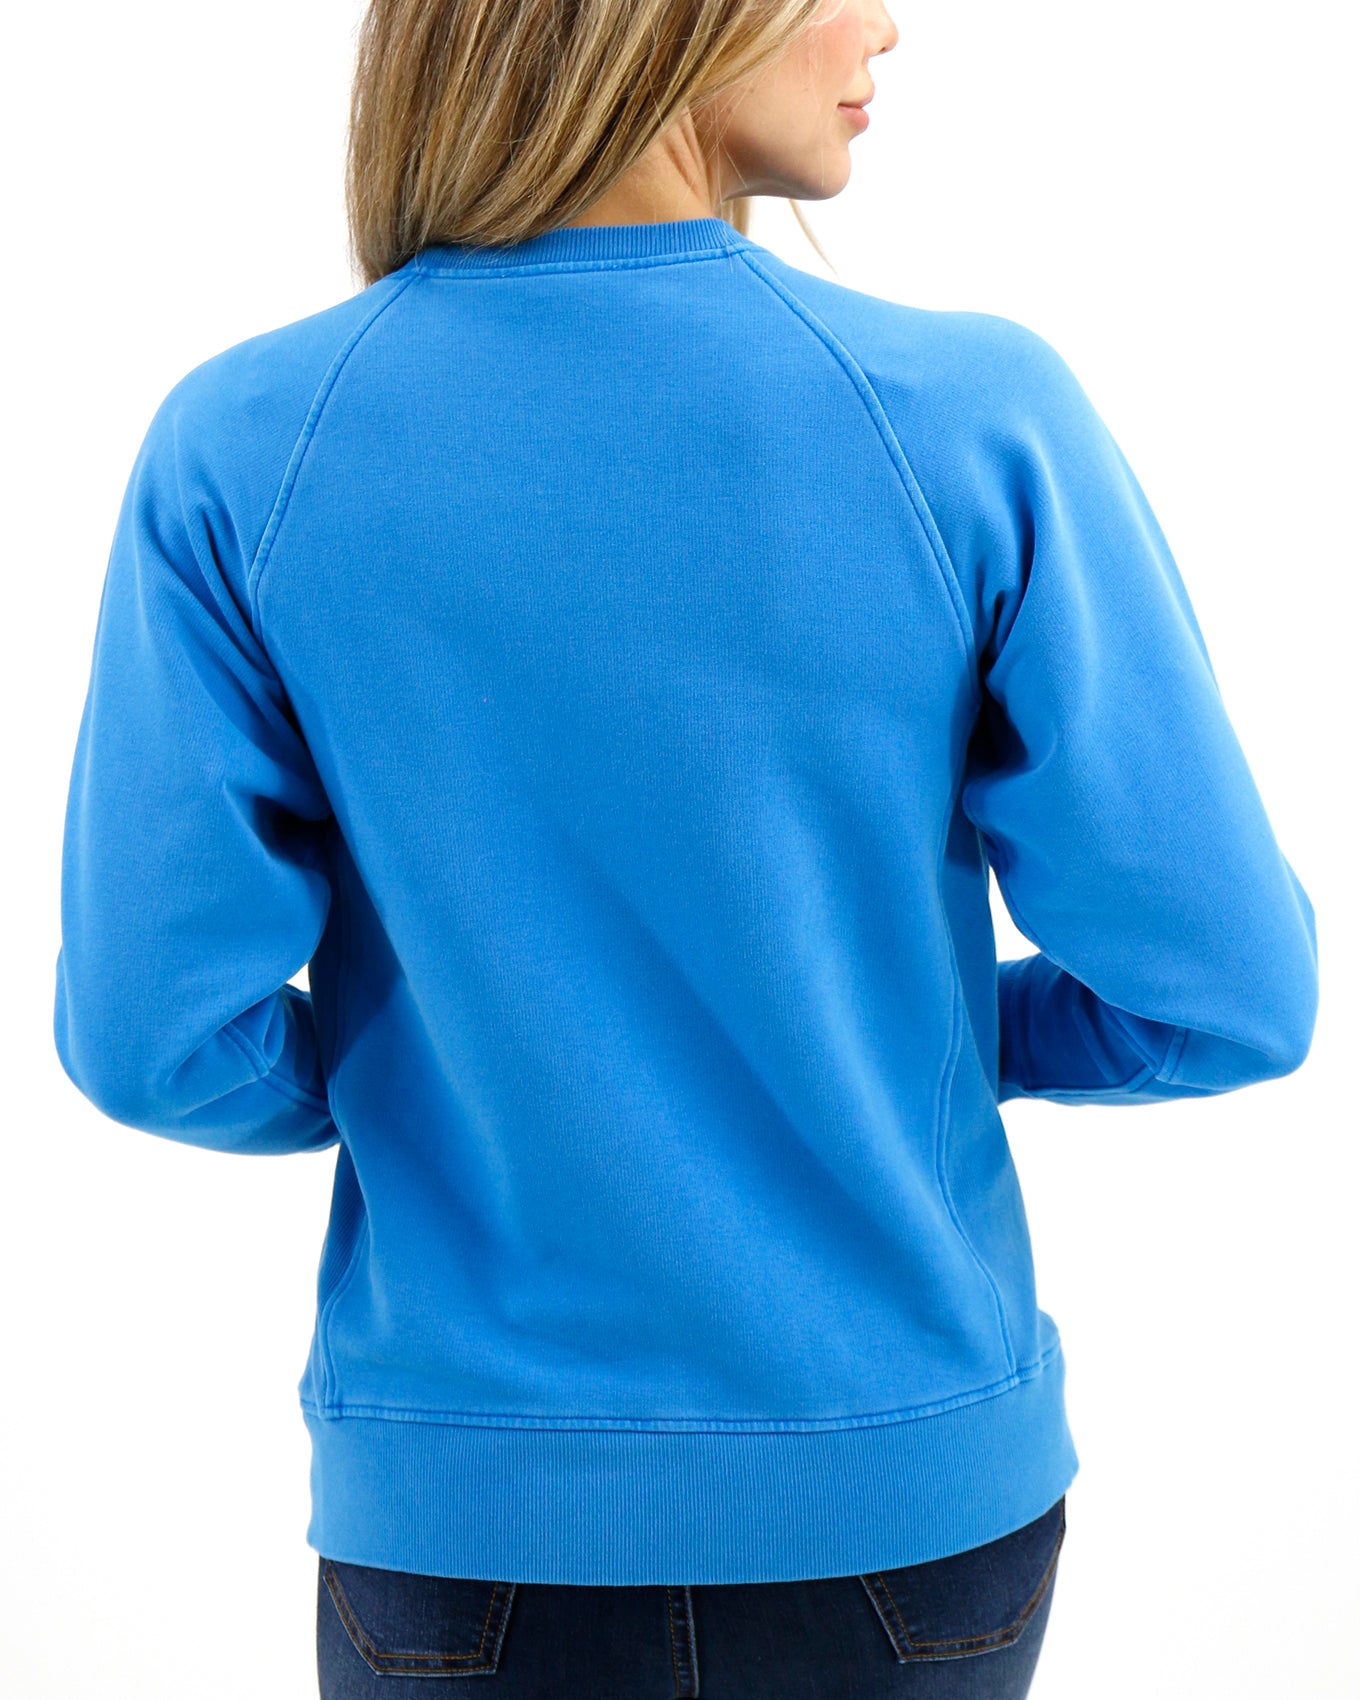 Back stock shot of Vibrant Blue Favorite Washed Pocket Sweatshirt